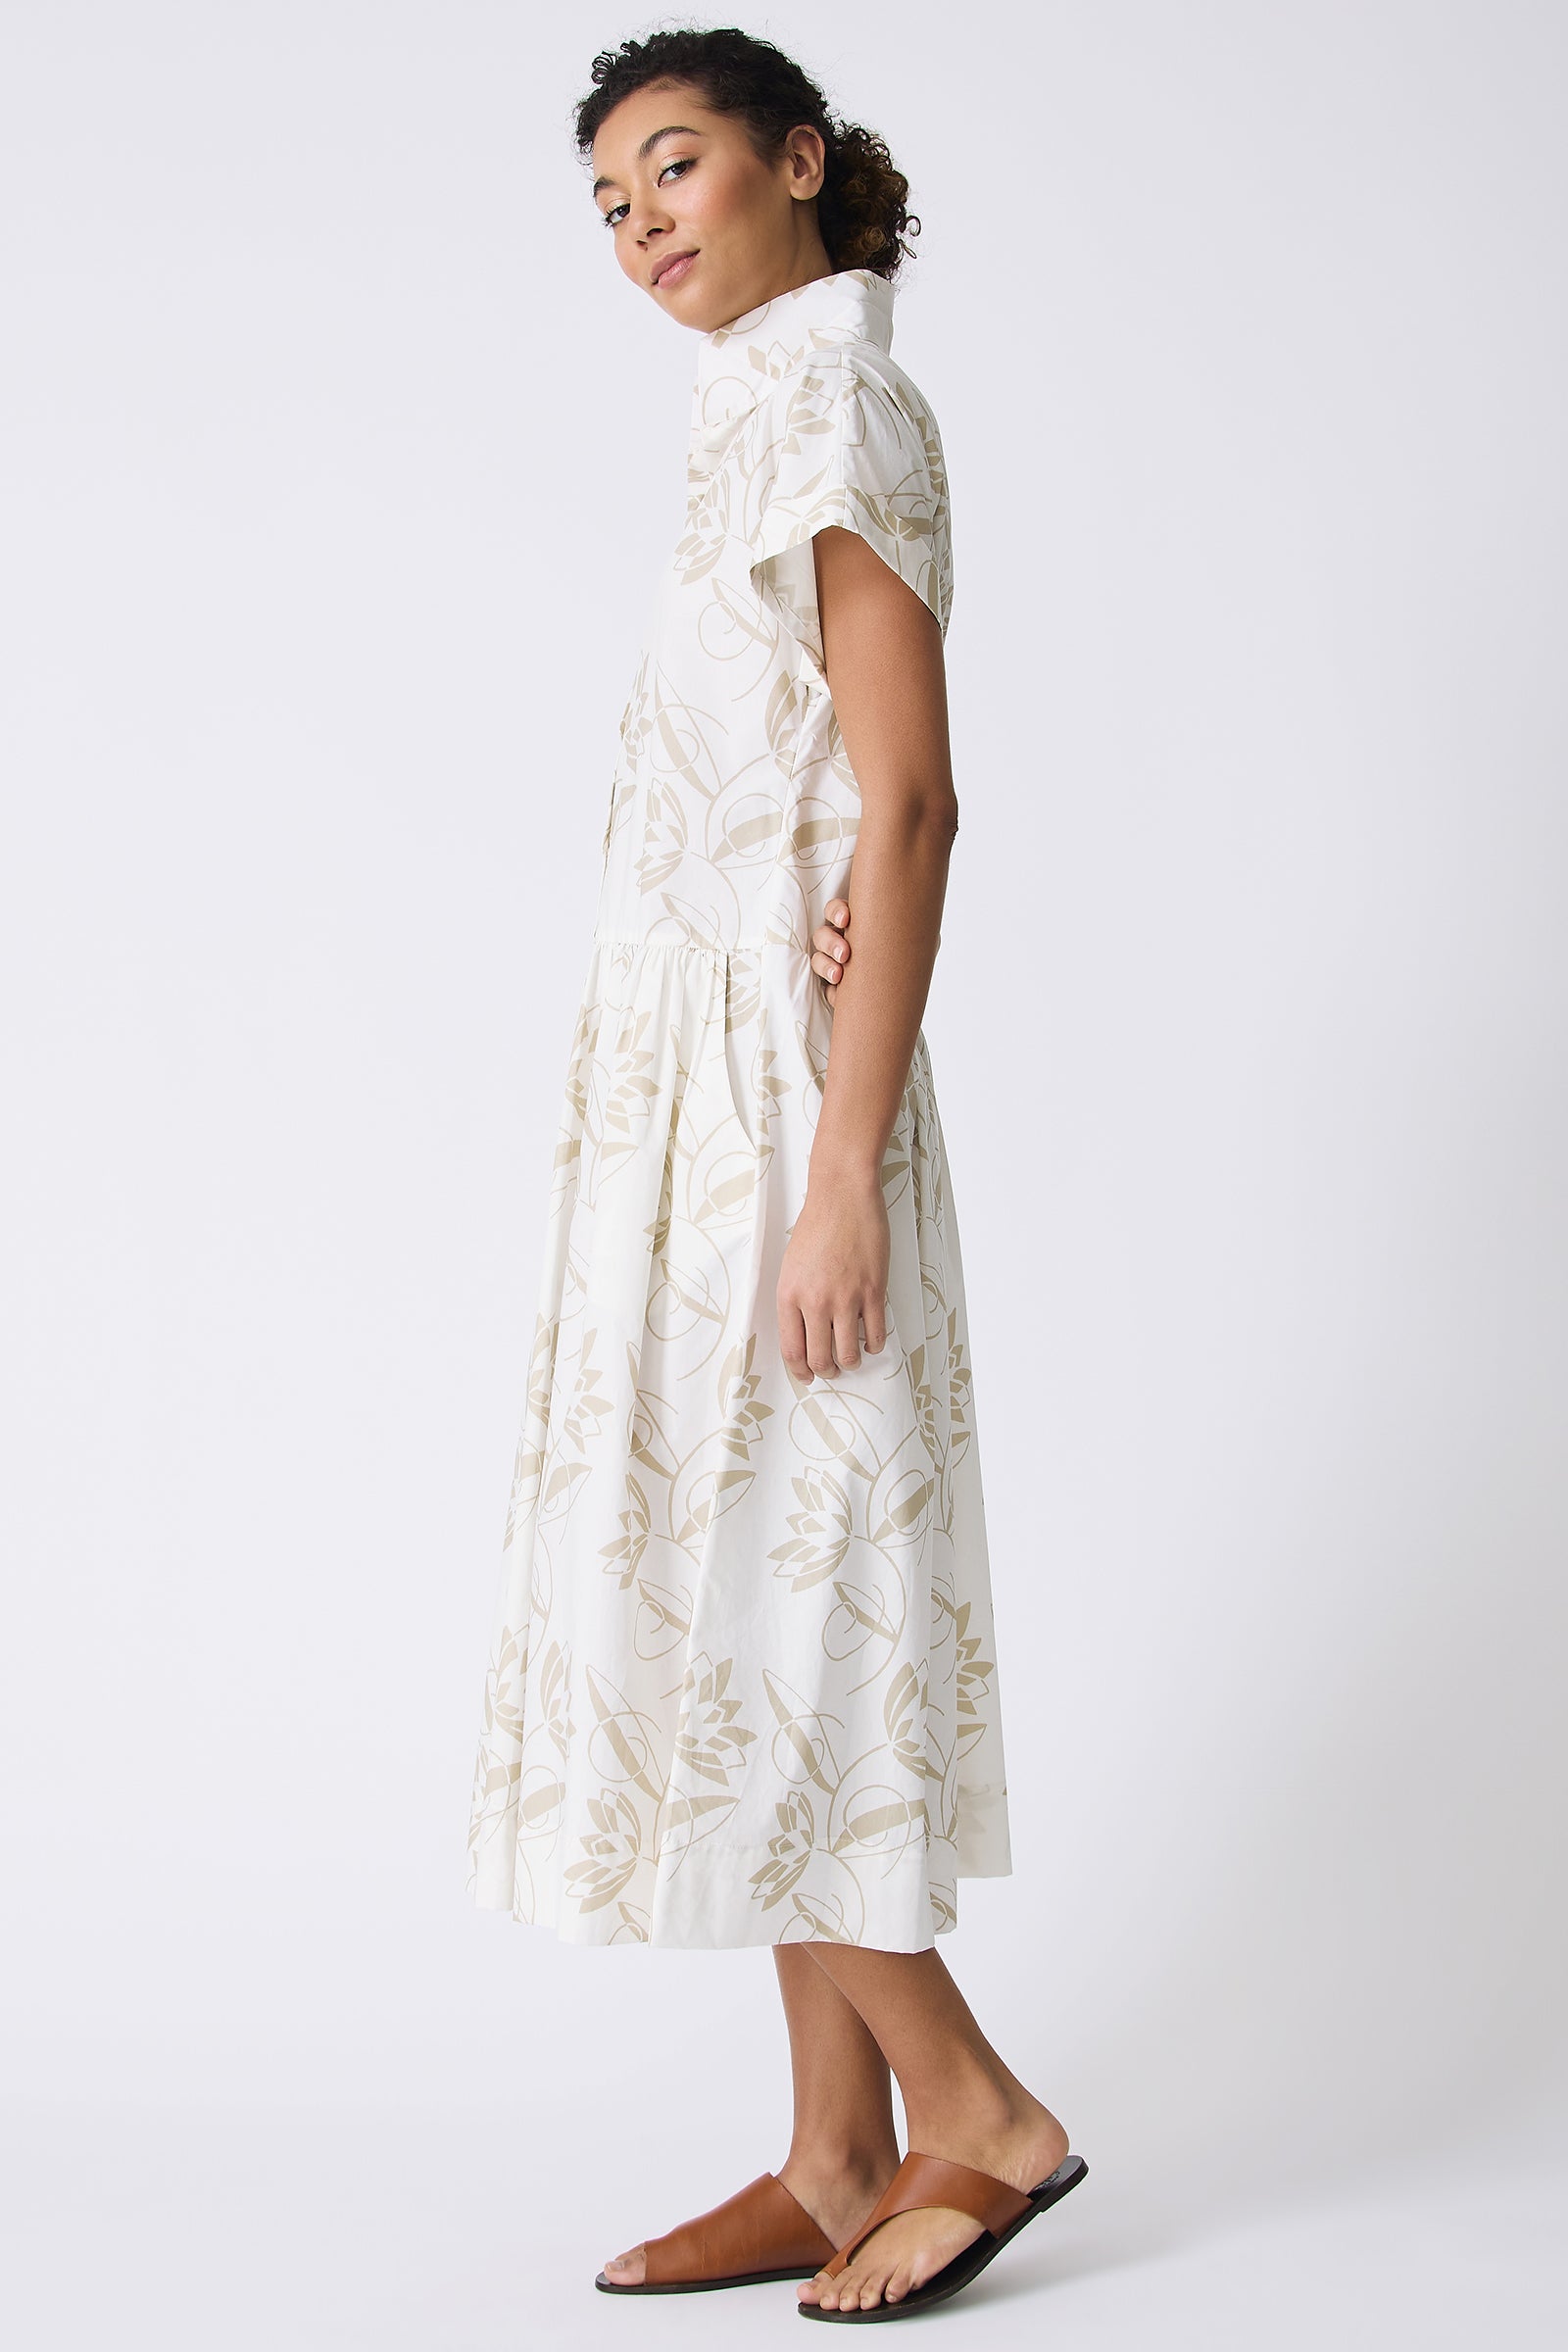 Kal Rieman Tanya Shirt Dress in Lotus Print on model full side view